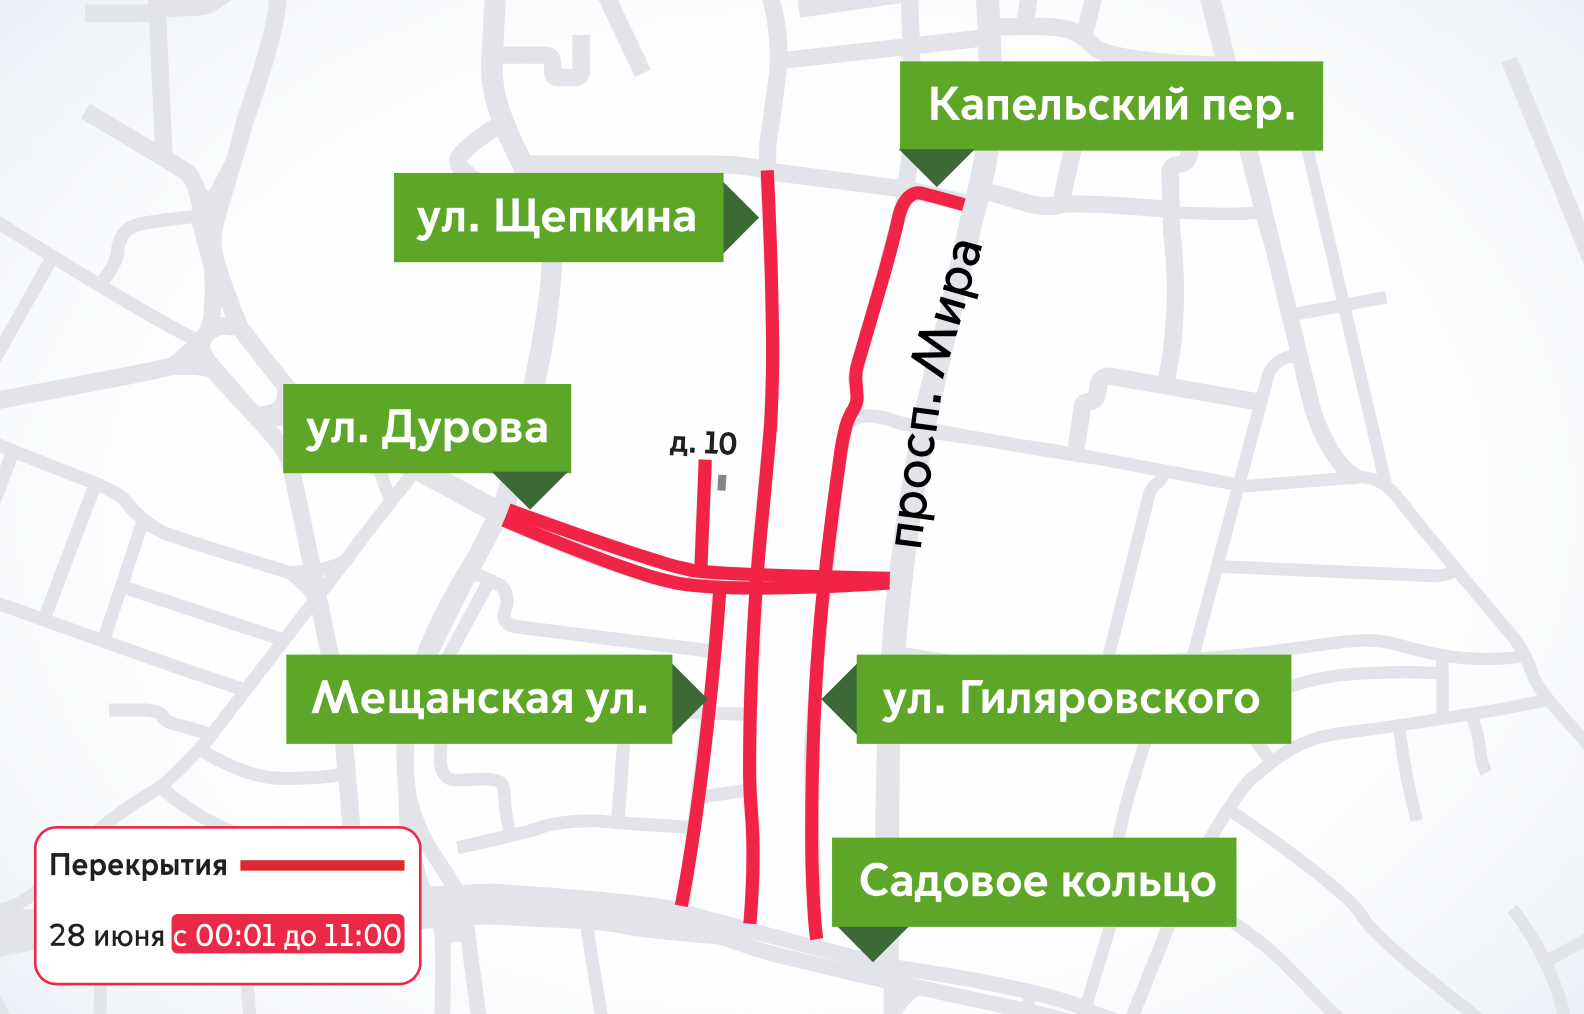 Перекрытие дорог в Москве сейчас. Перекрытие улиц в Москве завтра. Перекрытия в Москве завтра. Перекрытия в Москве 28 июня. Завтра москва будет перекрыта